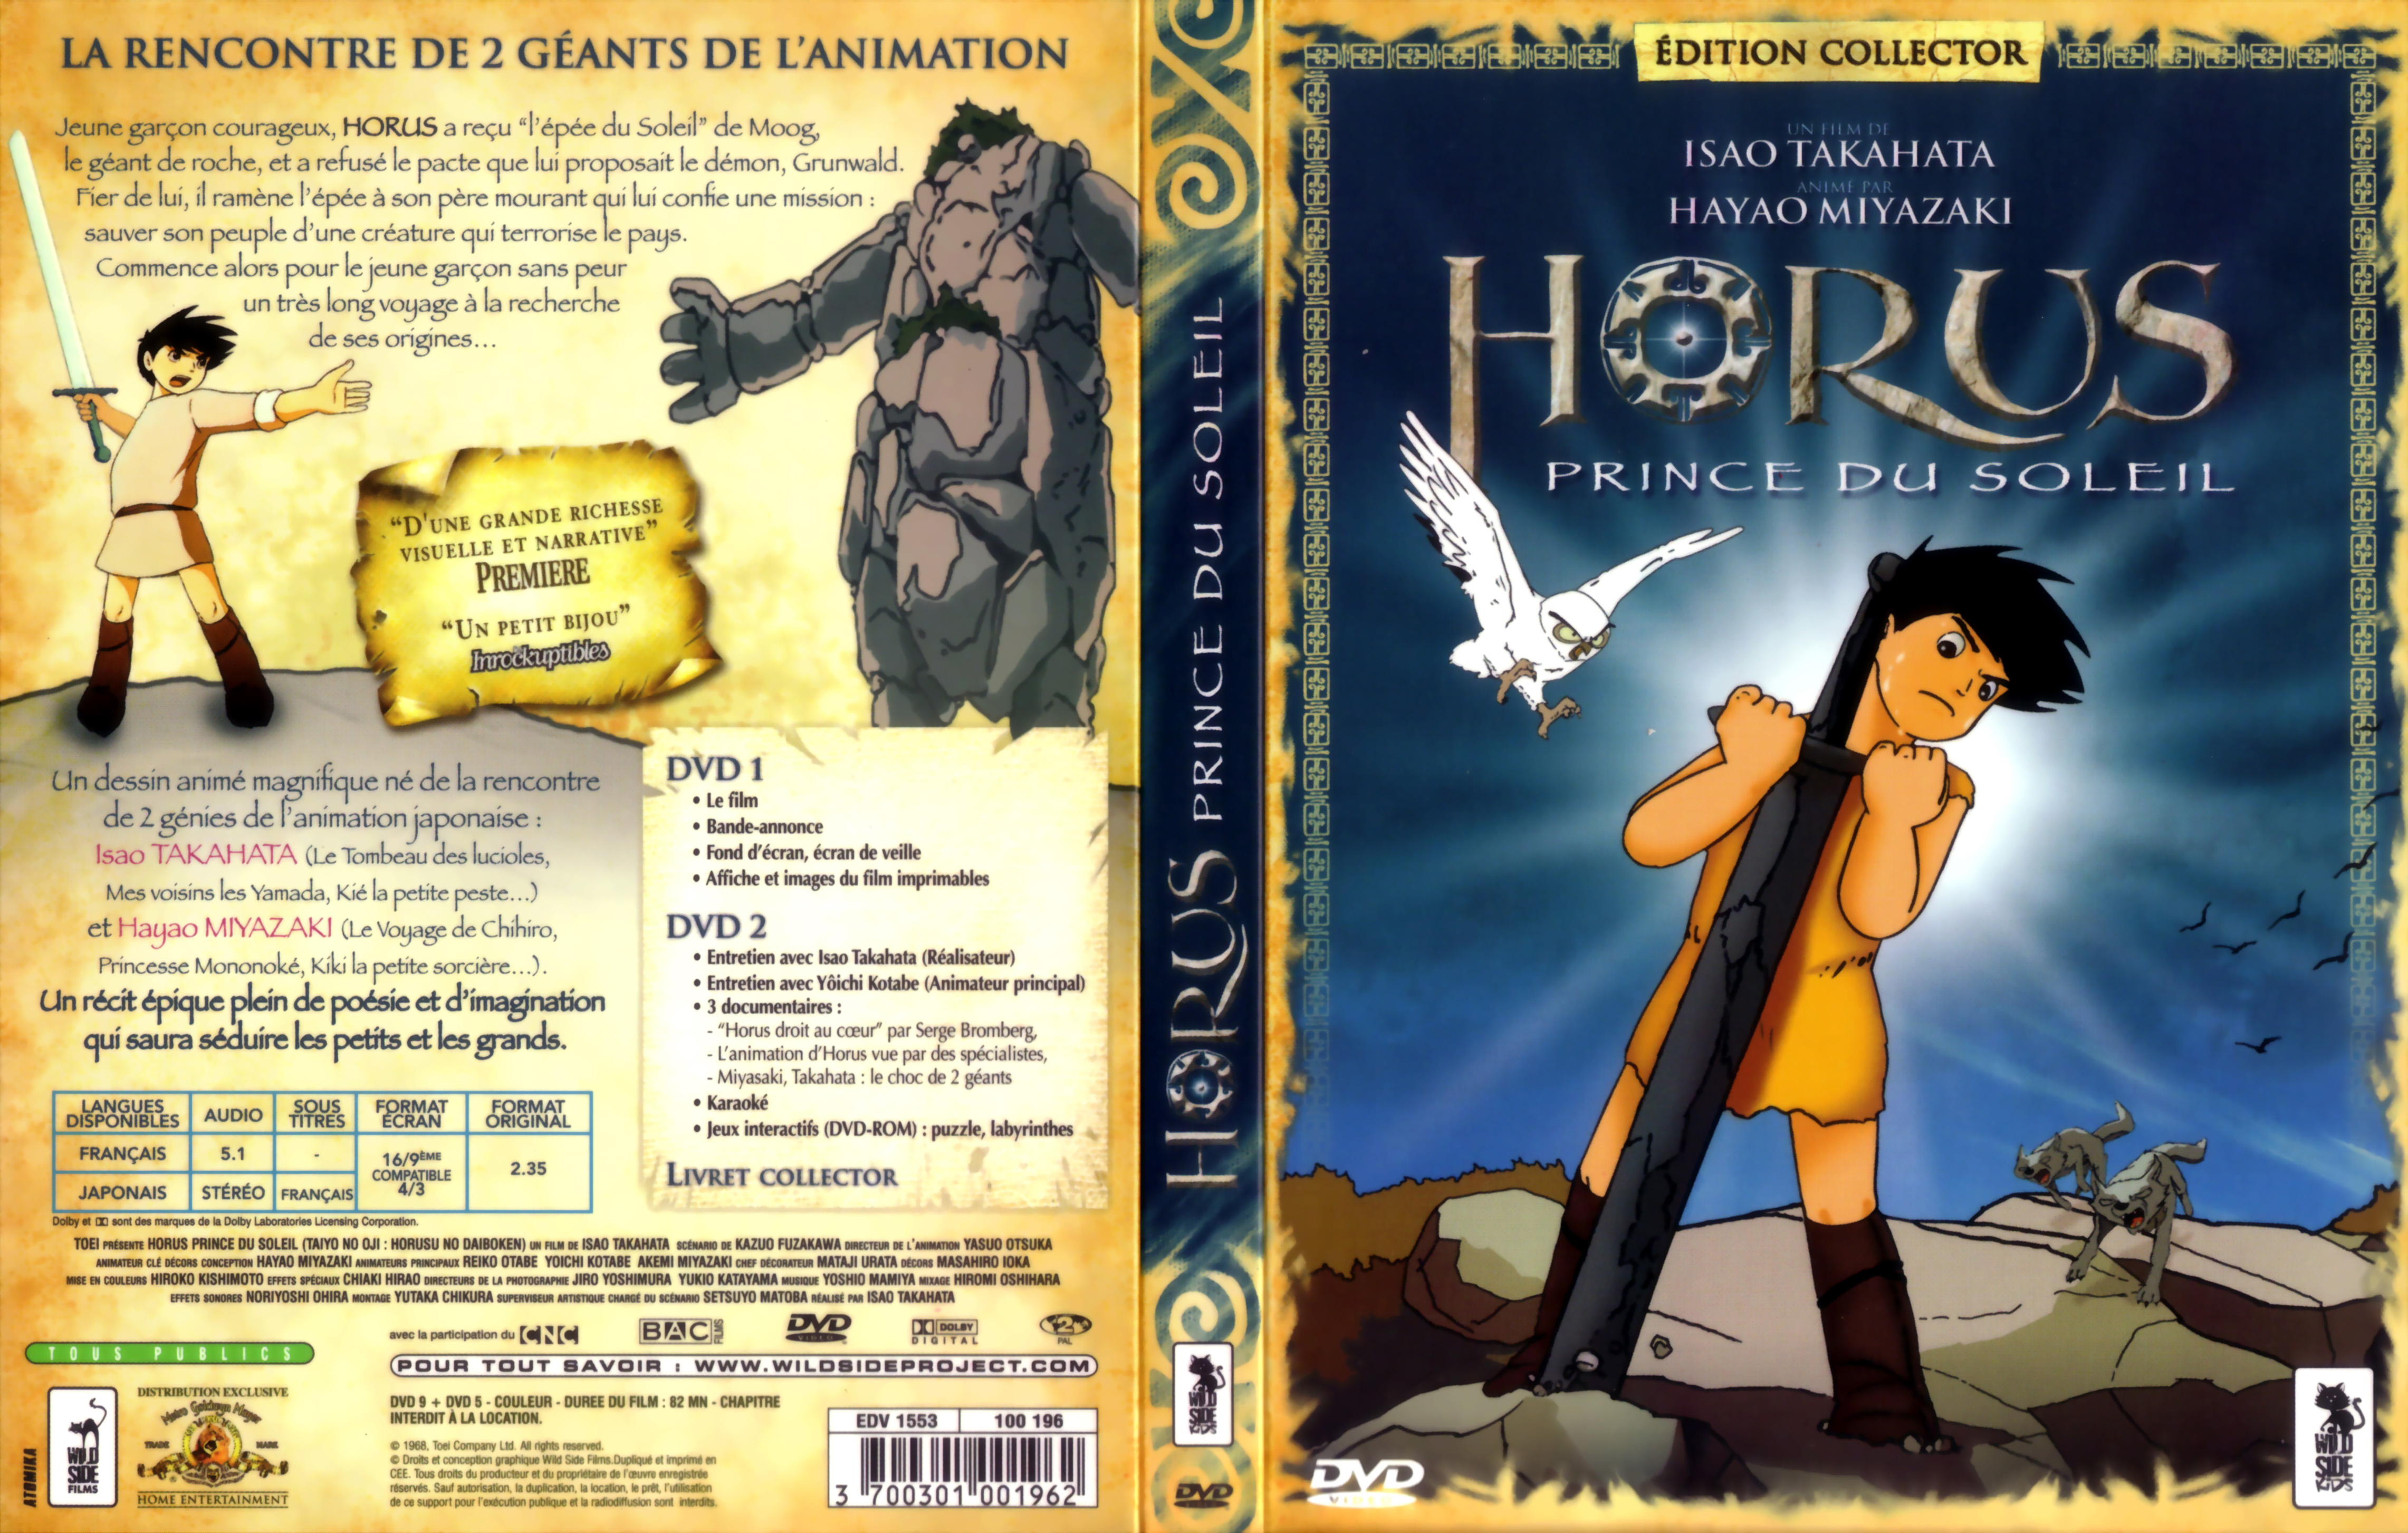 Jaquette DVD Horus Prince du Soleil